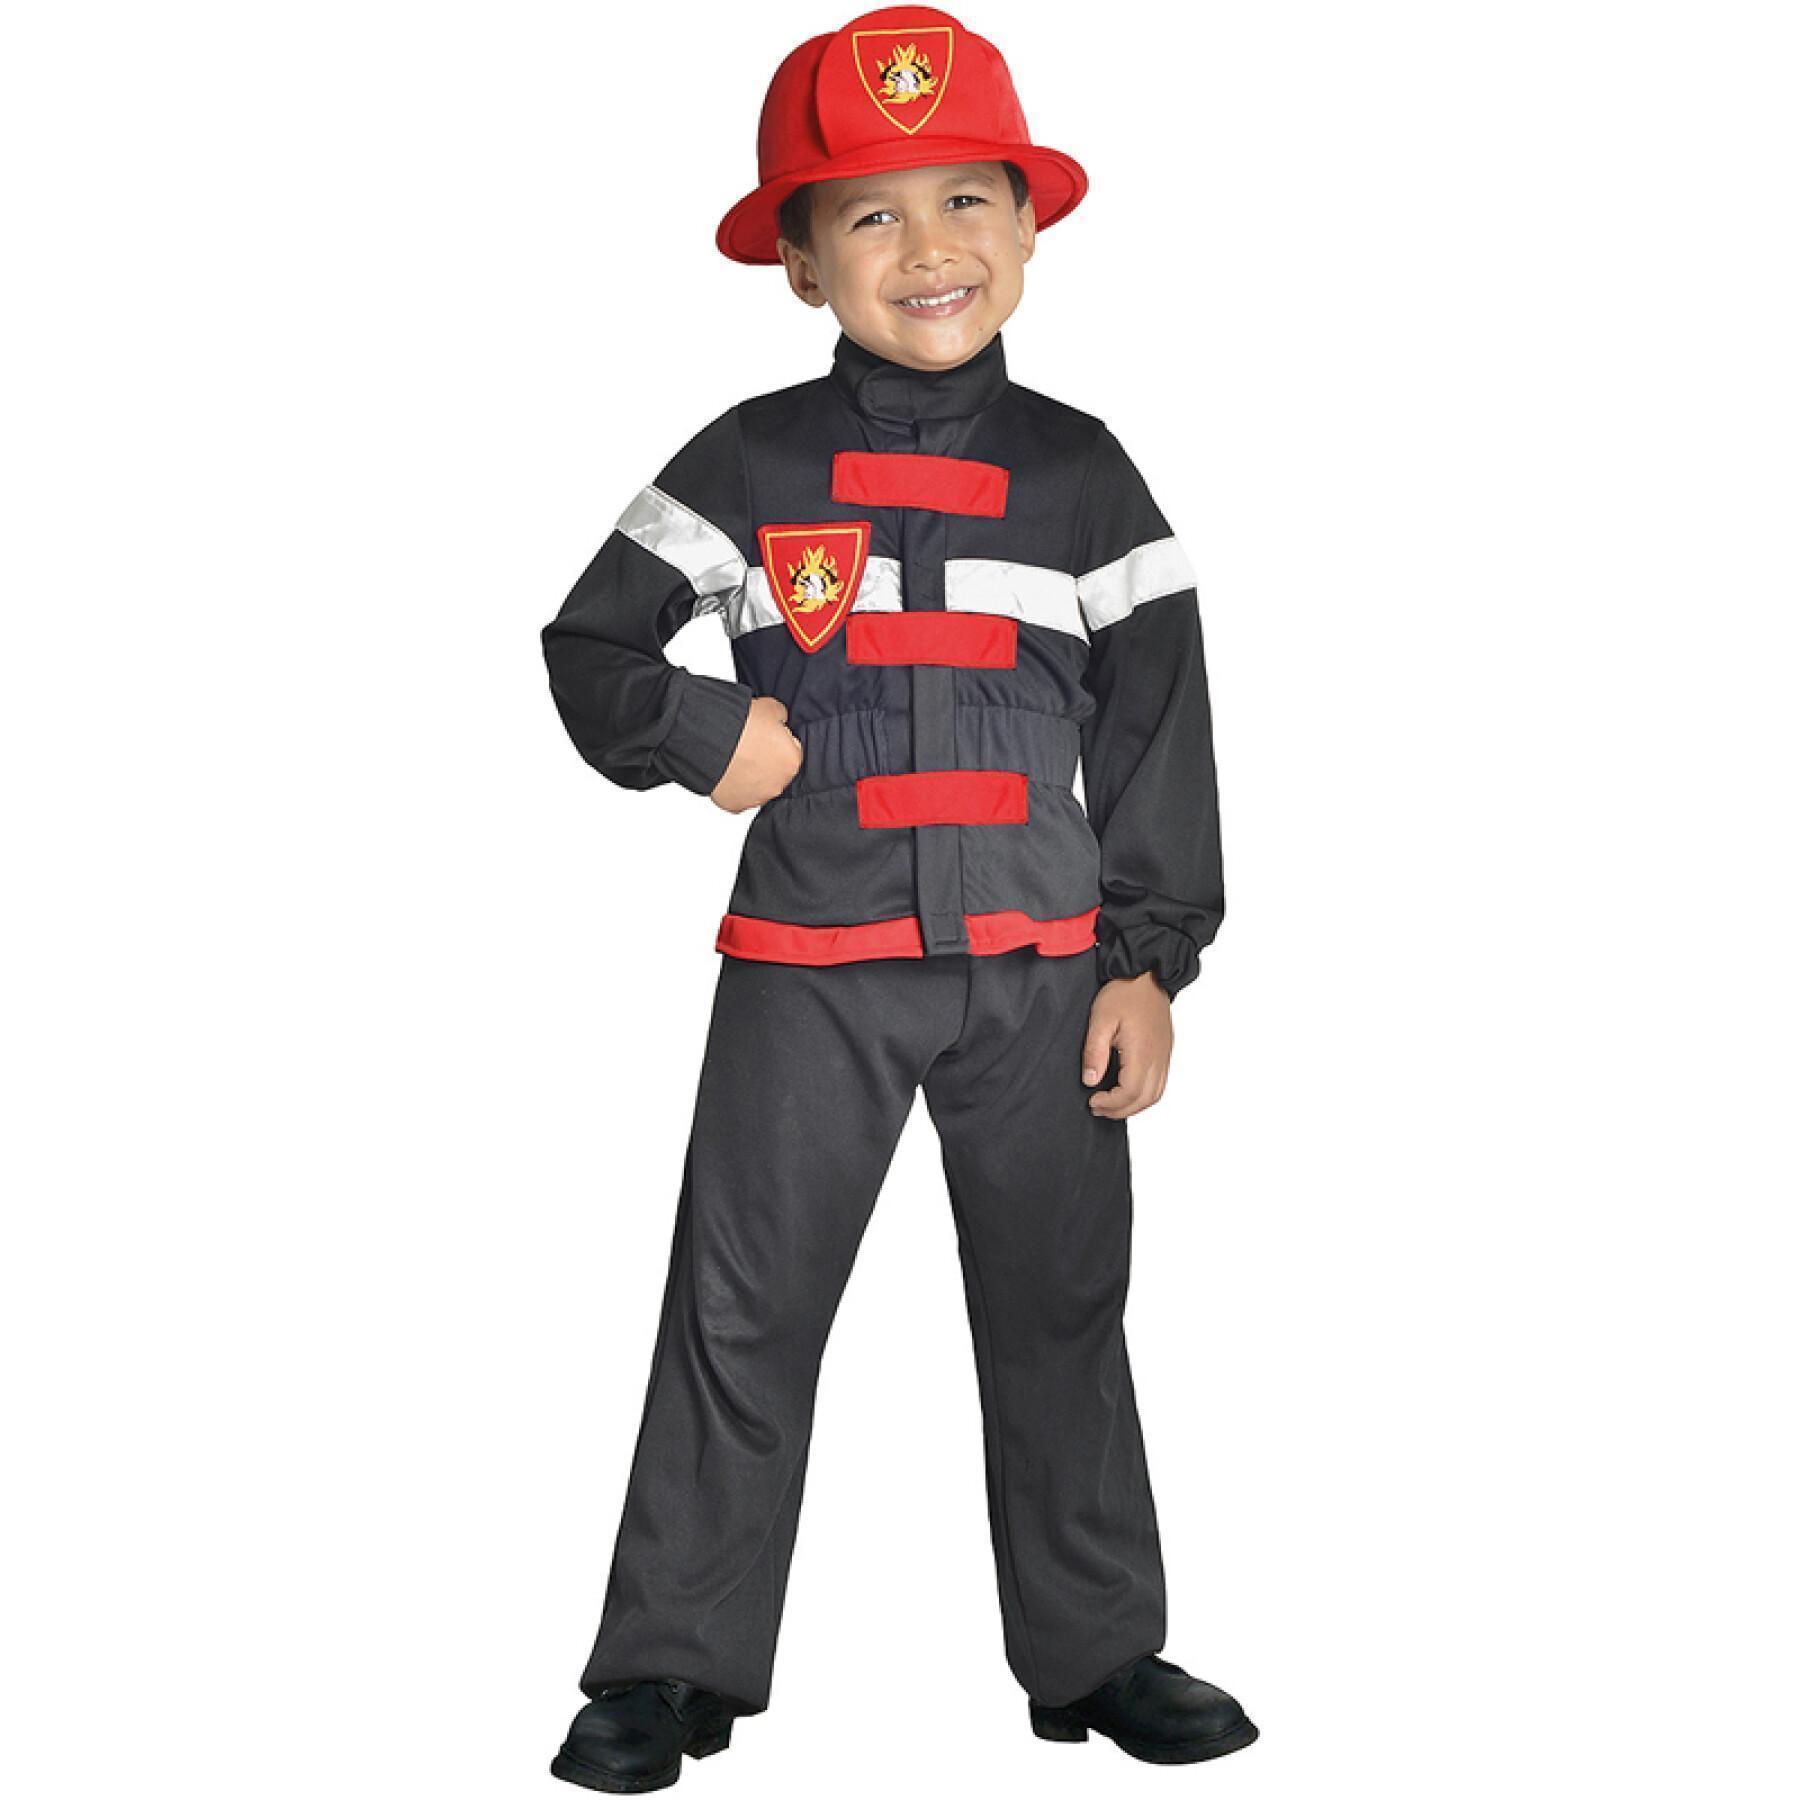 Fireman disguise Cesar Industrie